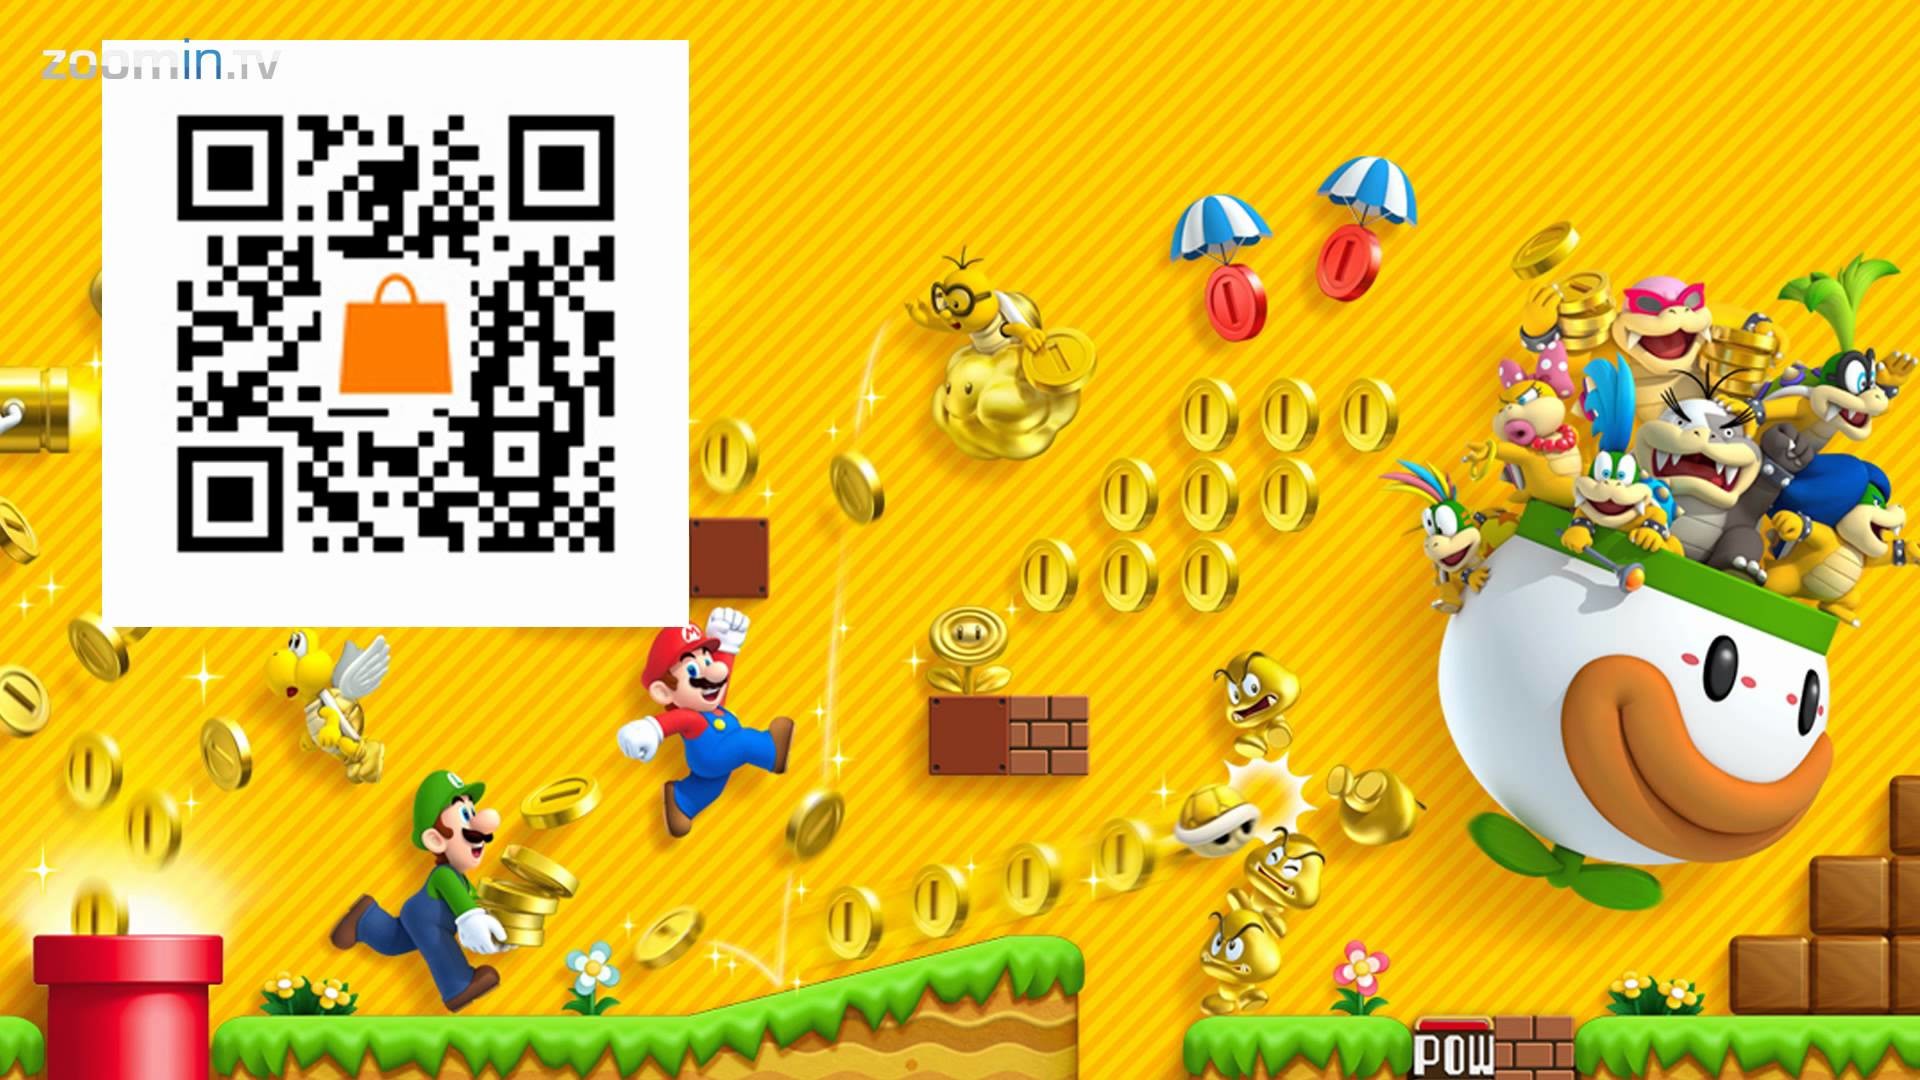 Data-src - New Super Mario Bros 2 - HD Wallpaper 